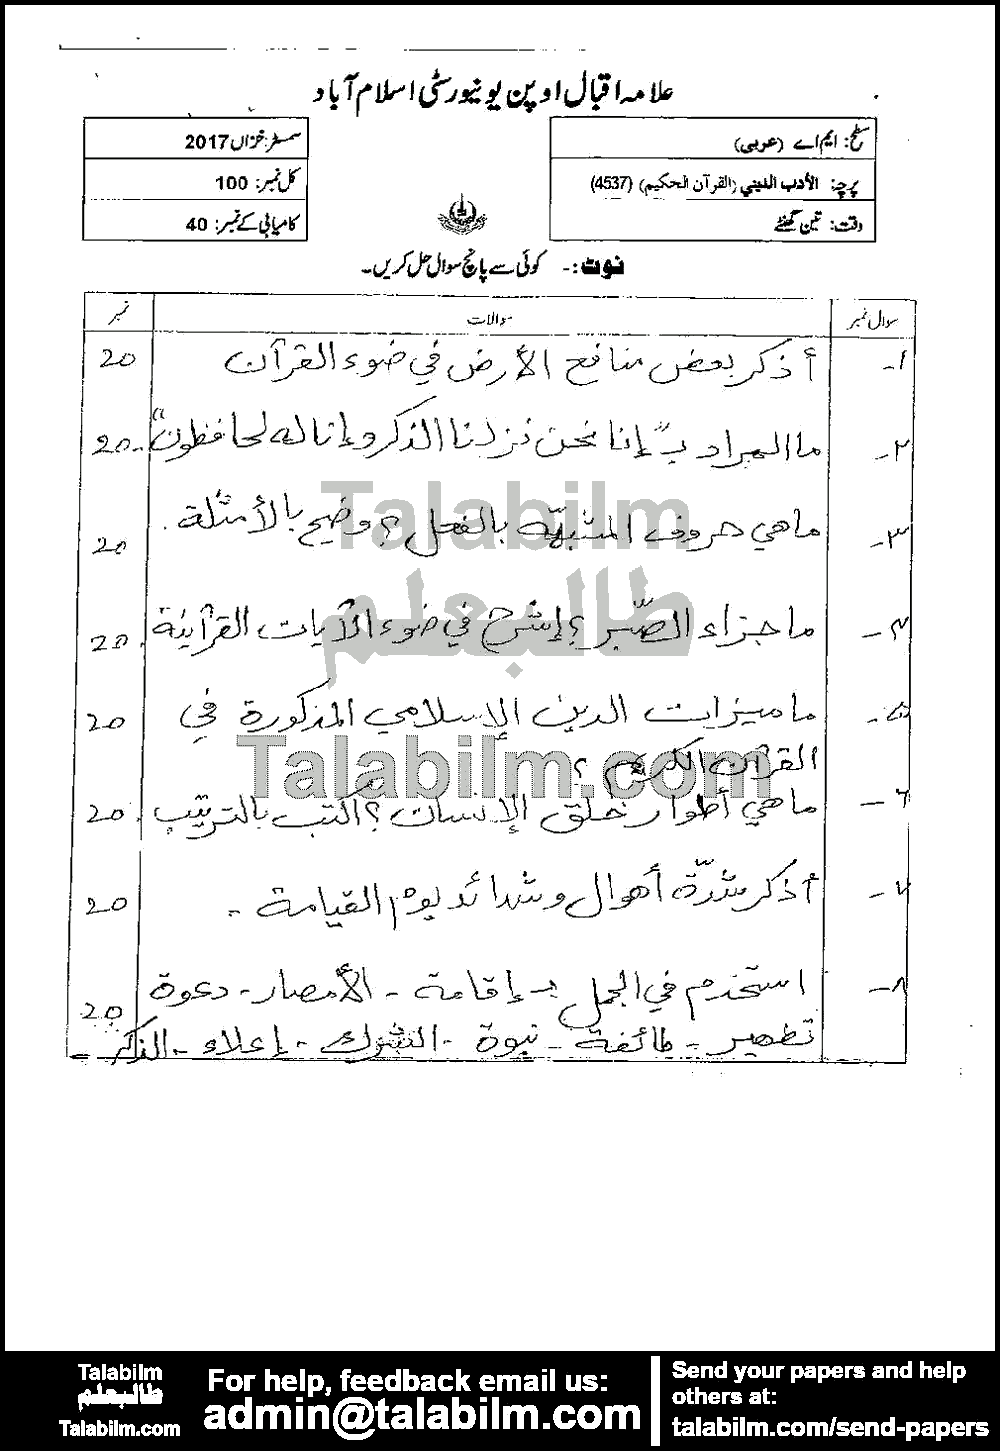 Religious Literature (Quran) 4537 past paper for Autumn 2017